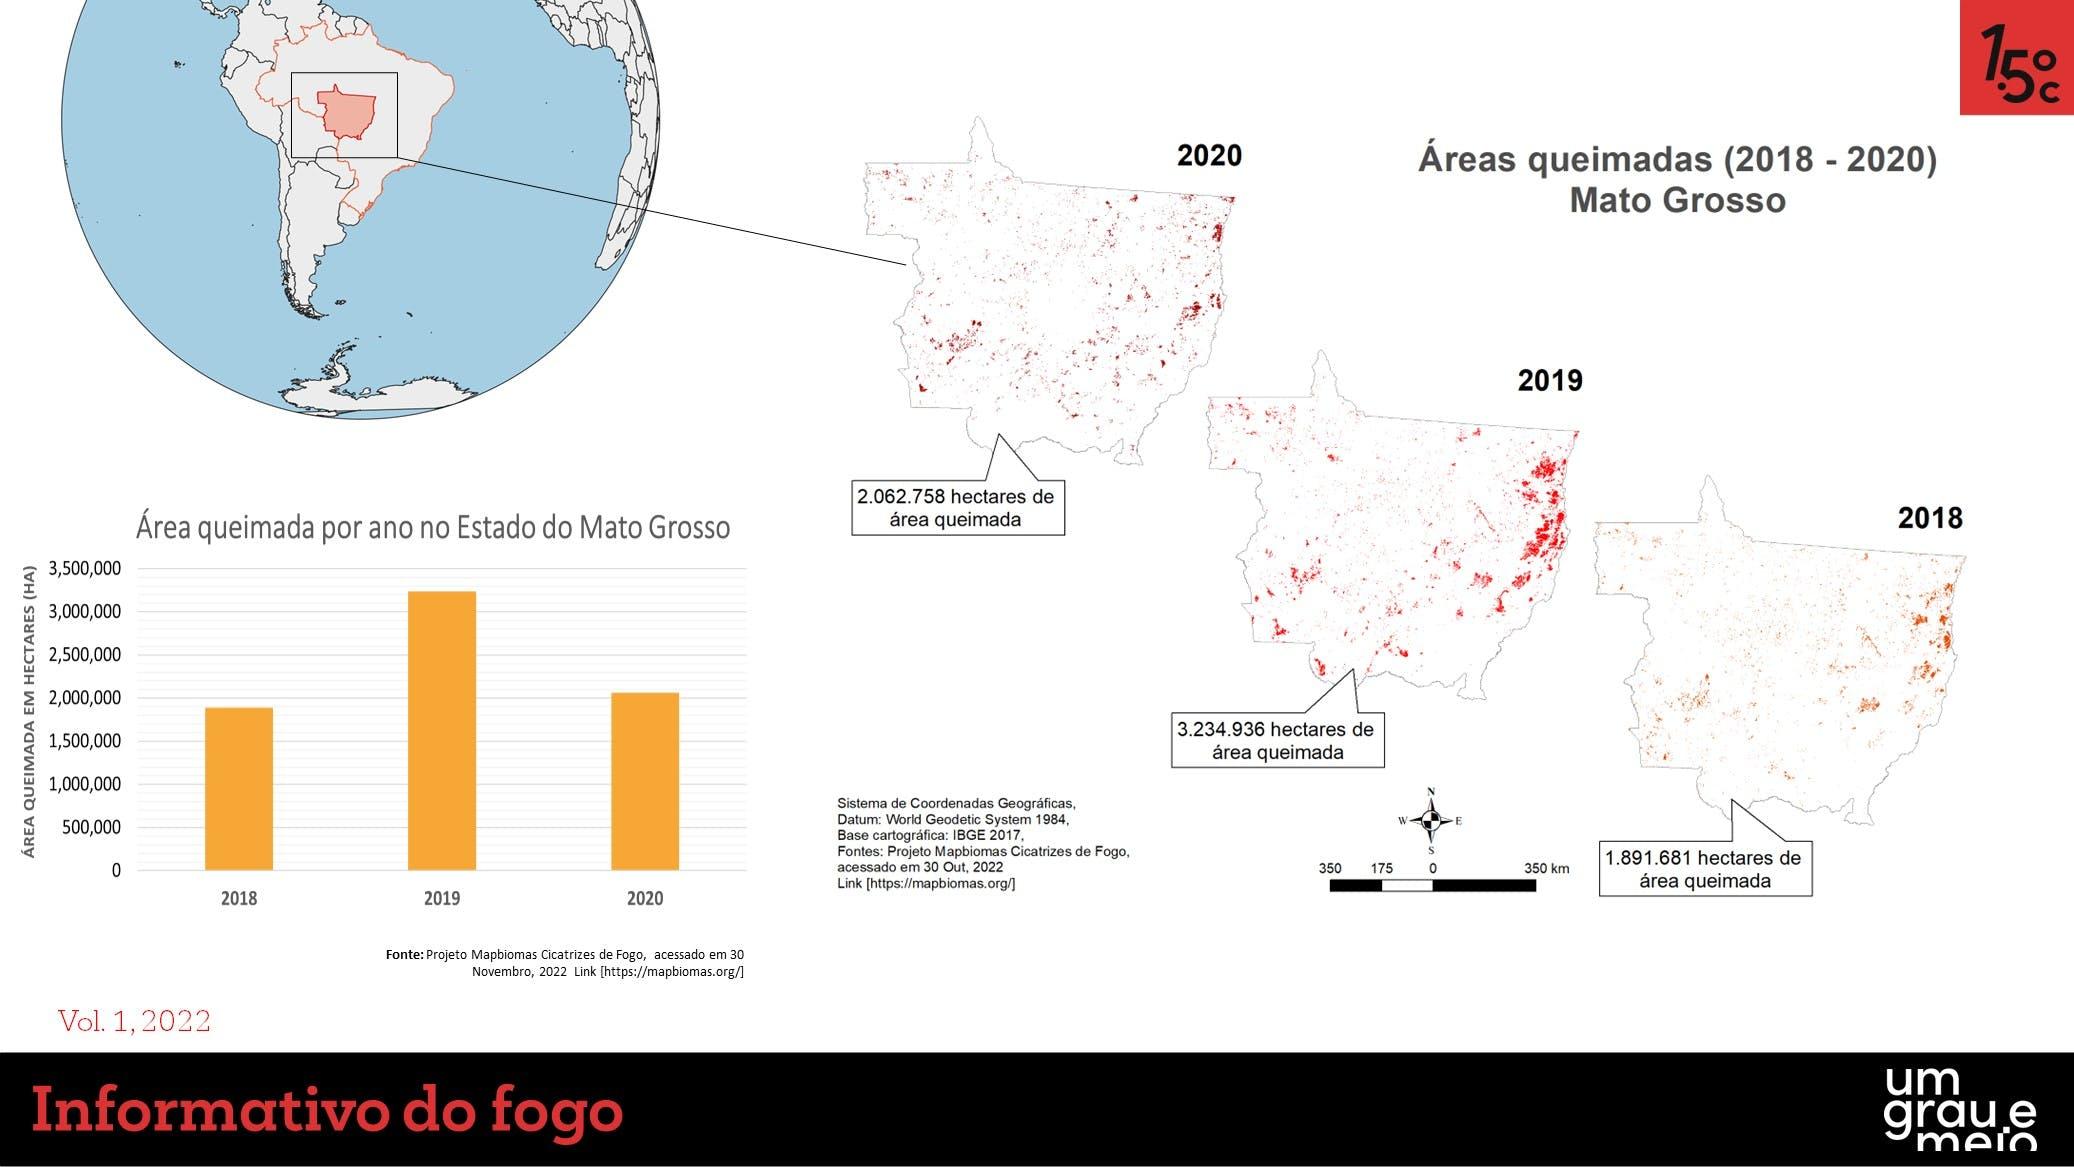 Infográficos de áreas queimadas no Pantanal (Mato Grosso, Brasil)